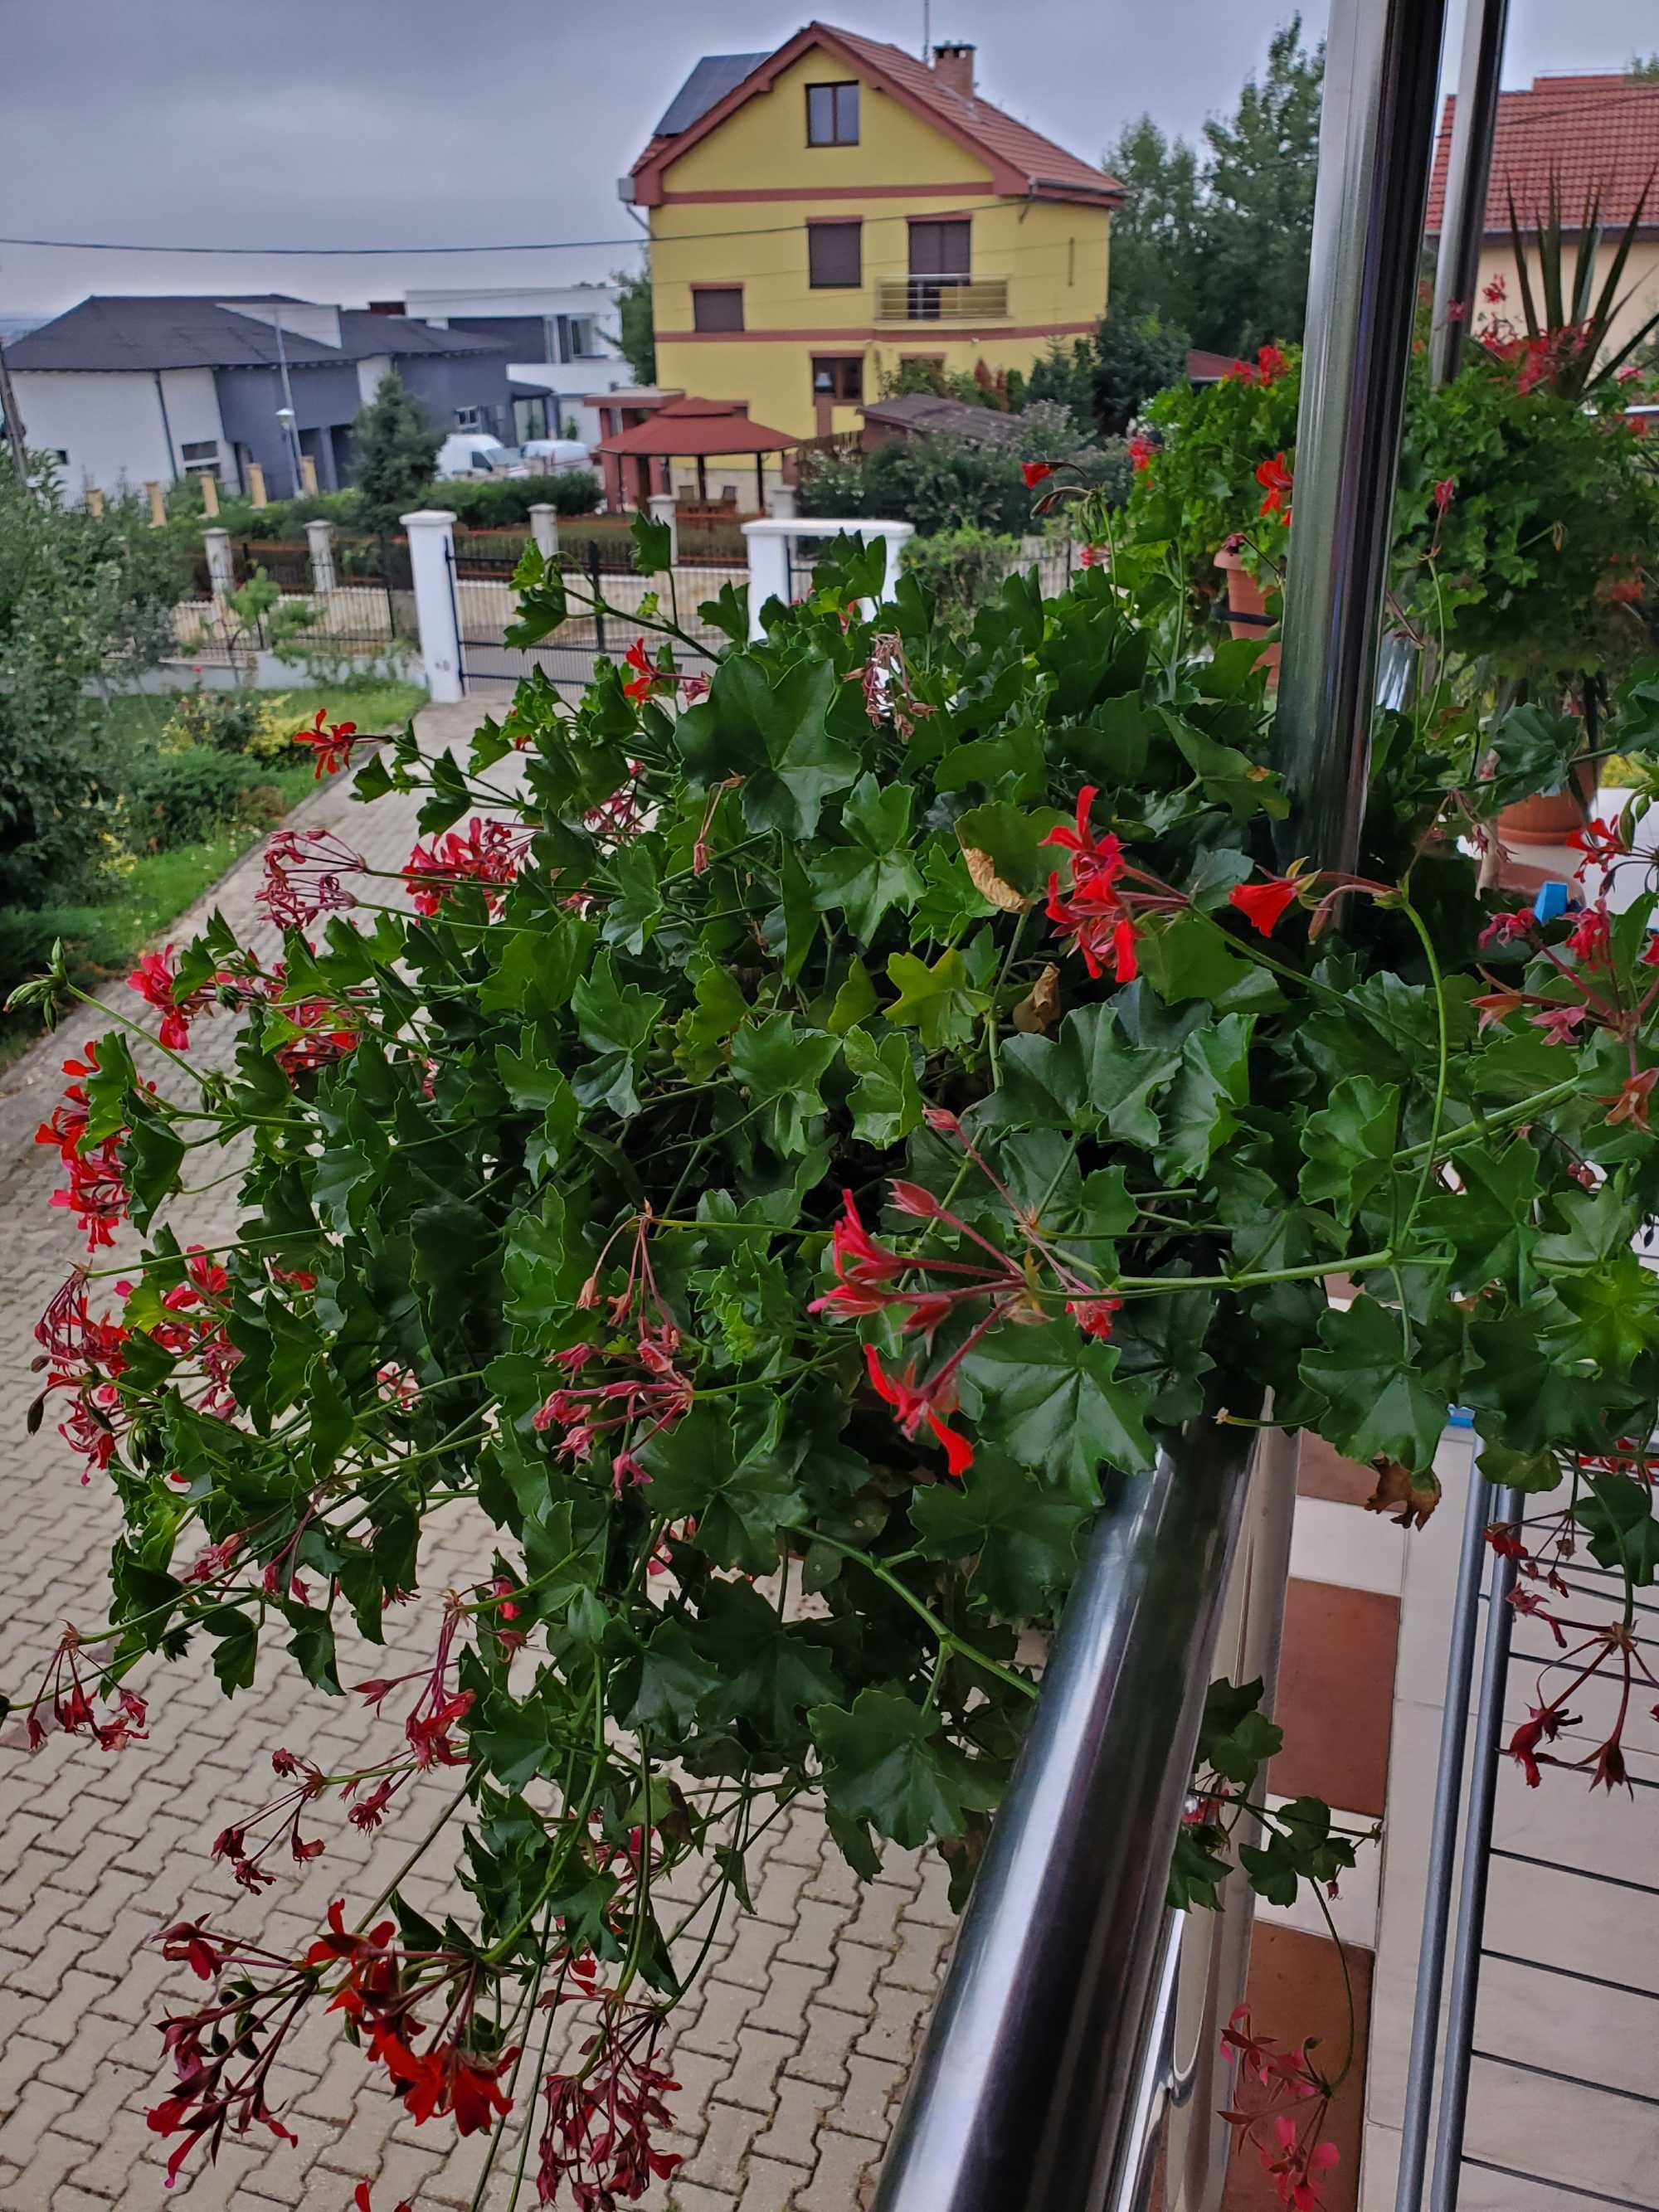 Muscate tiroleze rosii in jardiniere de 60 cm cu suport metalic.